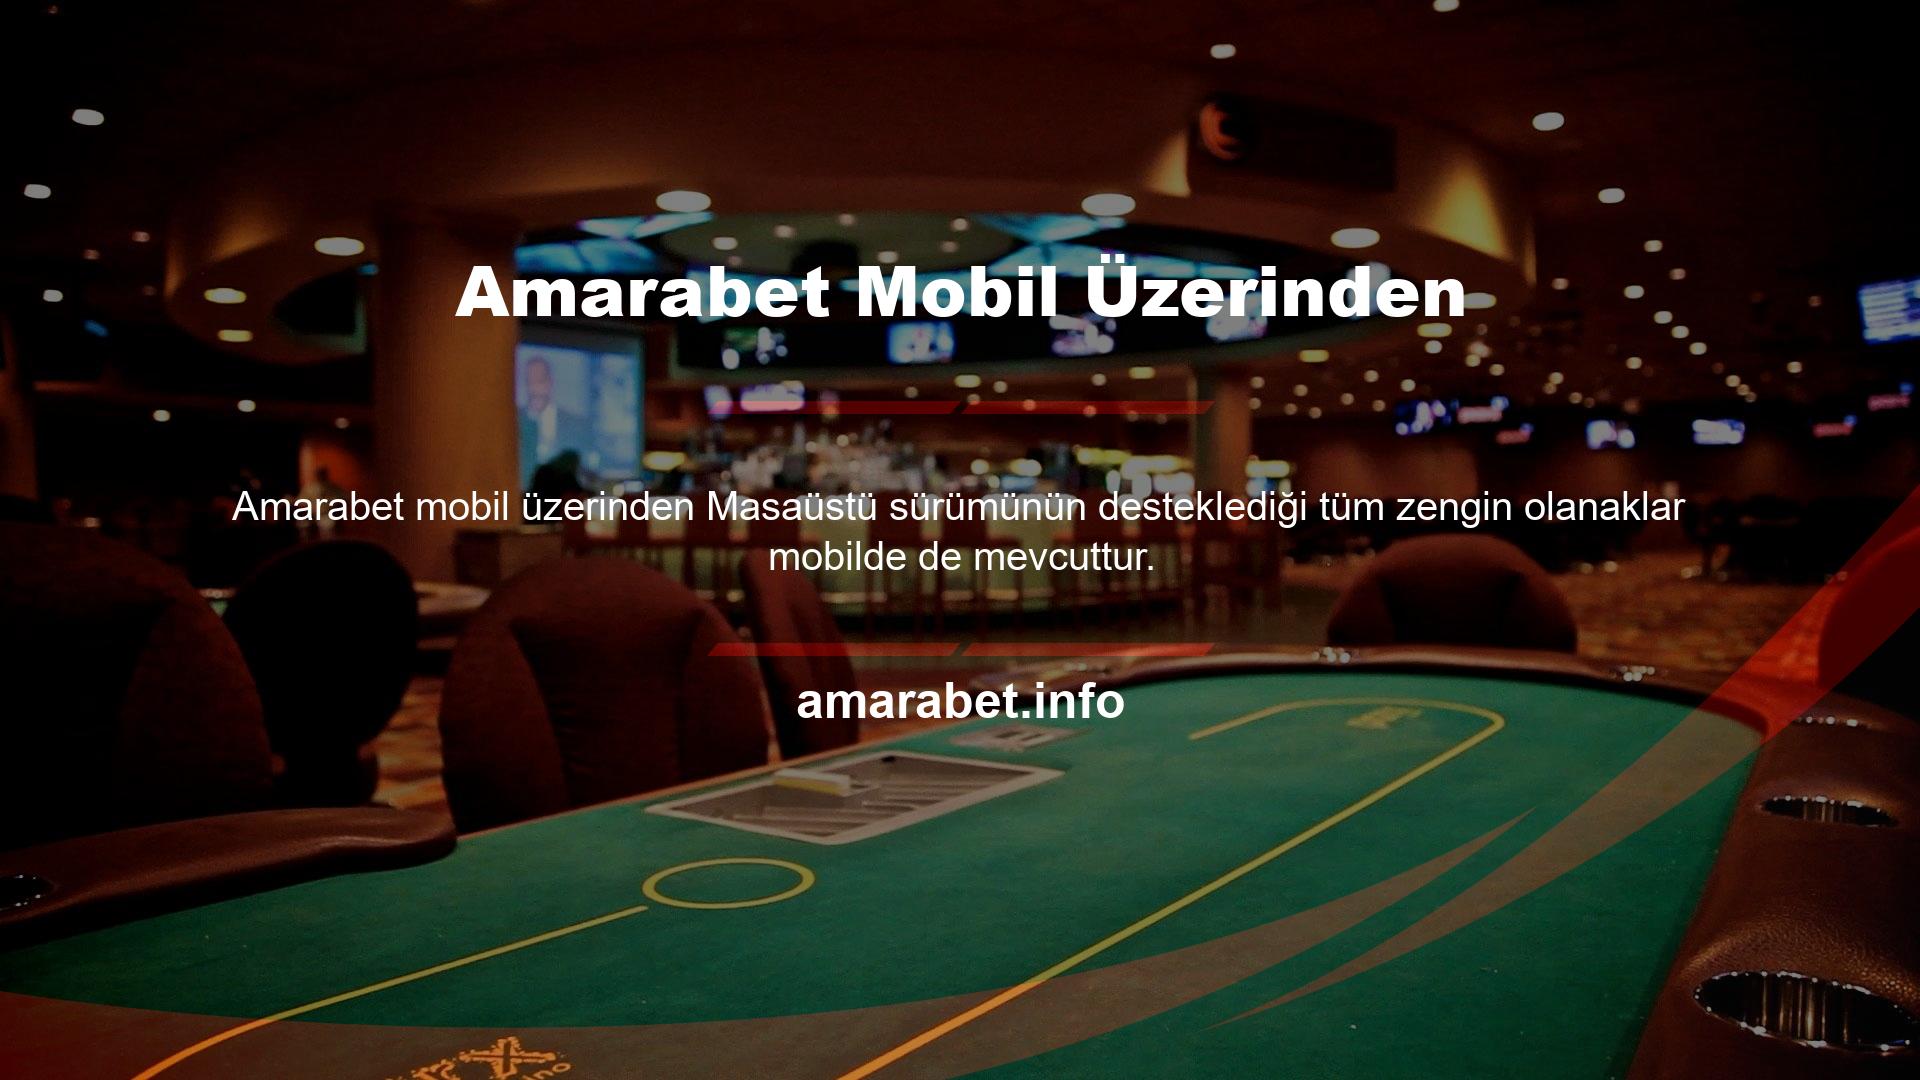 Bu bağlamda Amarabet girişi Android veya iOS işletim sisteminde güvenli bir şekilde yapılmaktadır